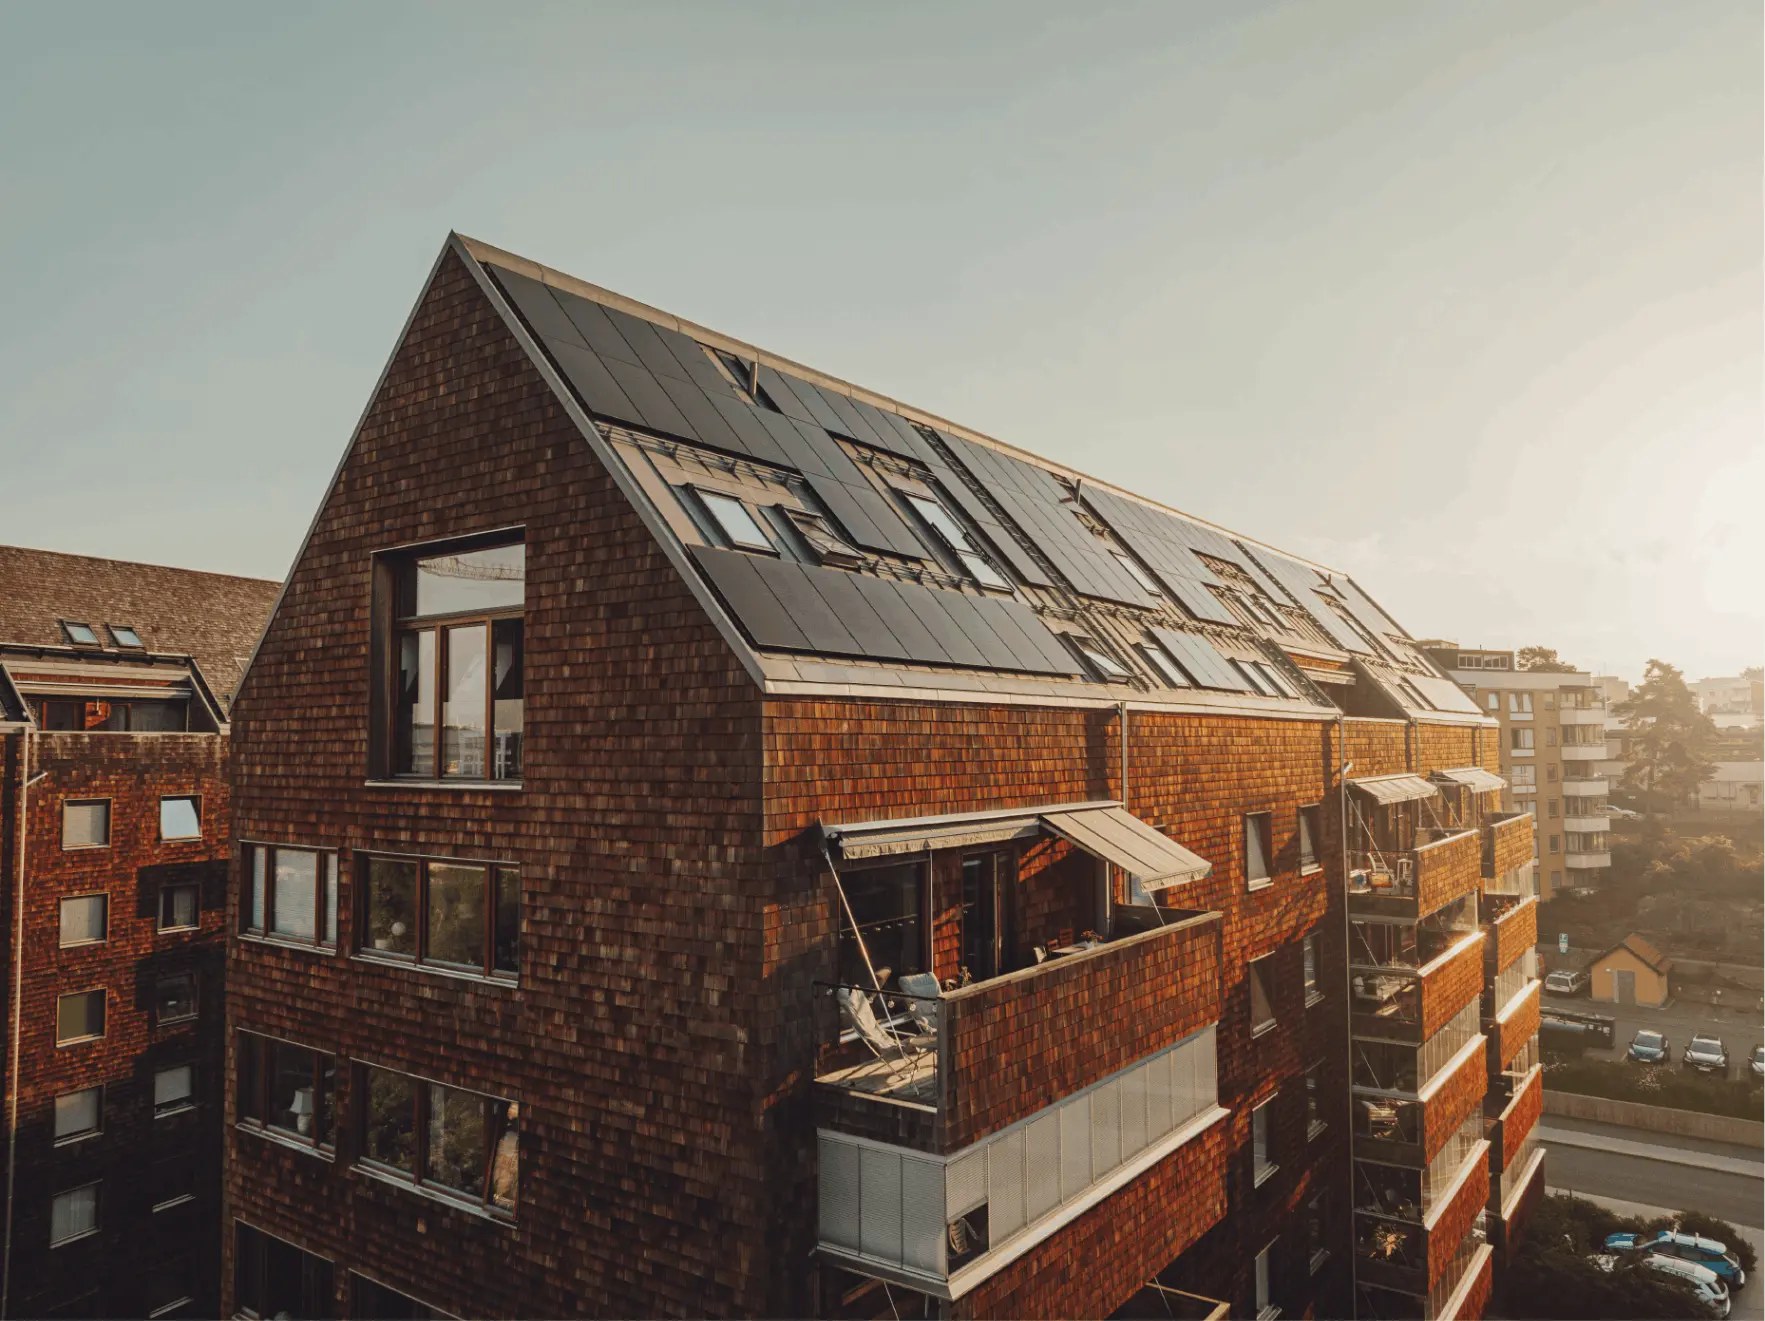 Lägenhetshus med solpaneler